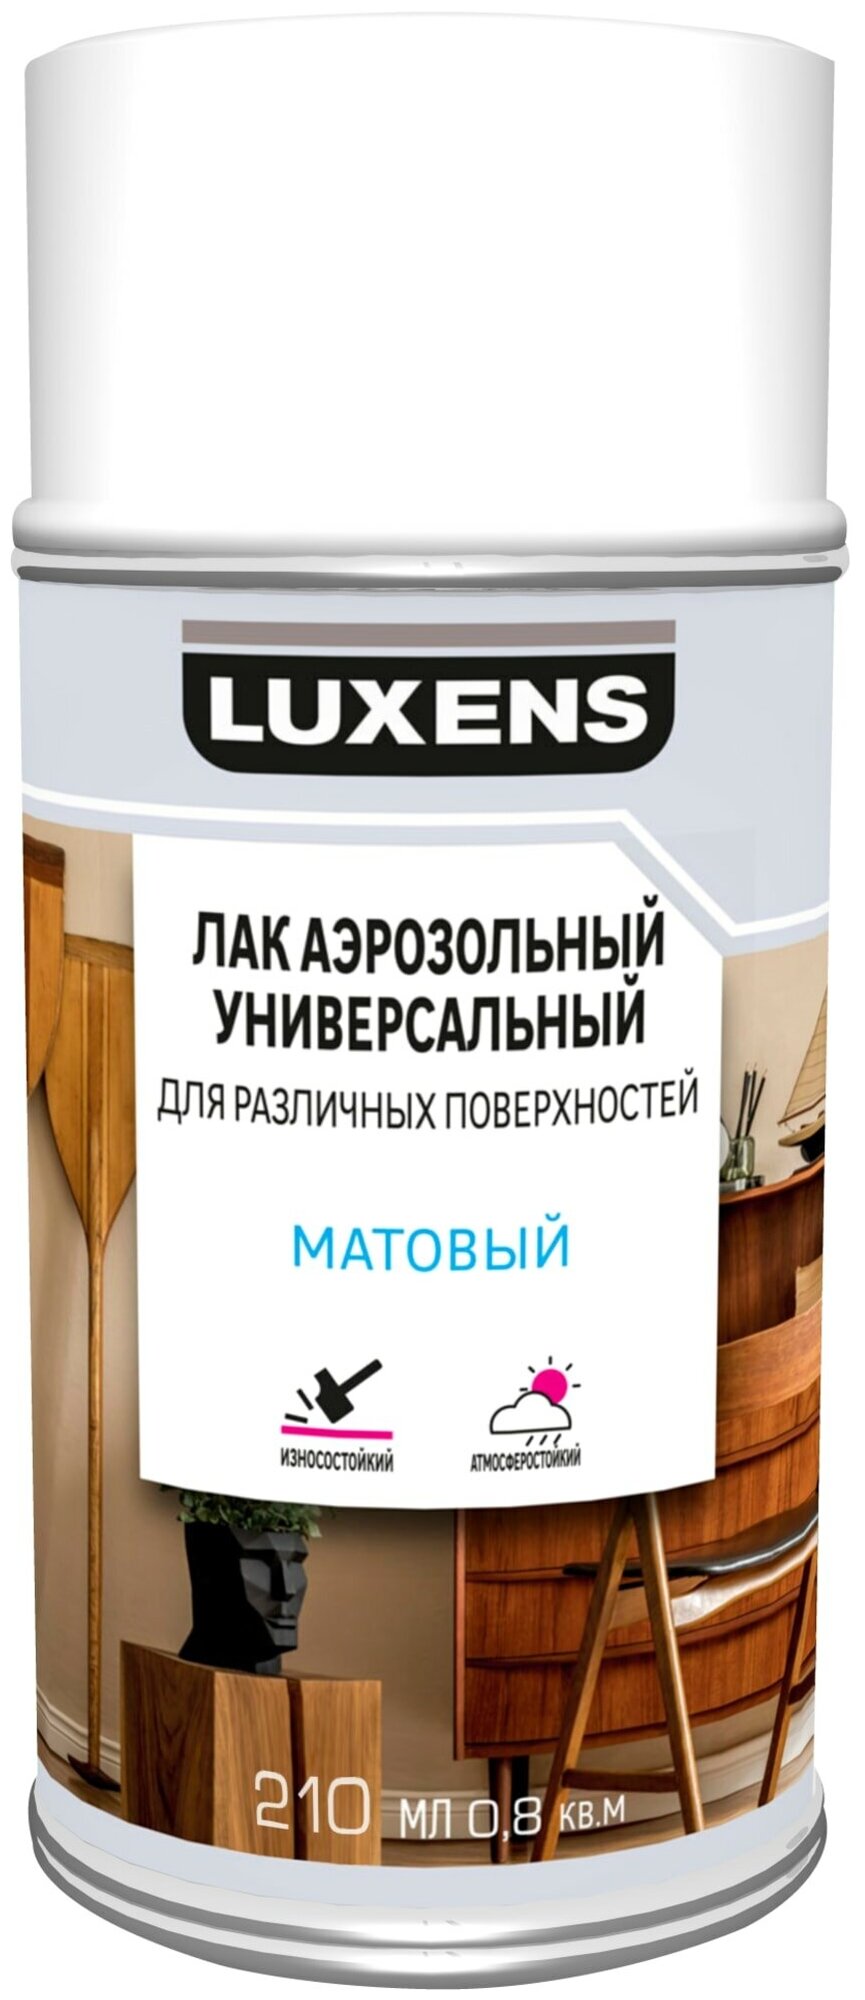 Лак Luxens универсальный для различных поверхностей матовый